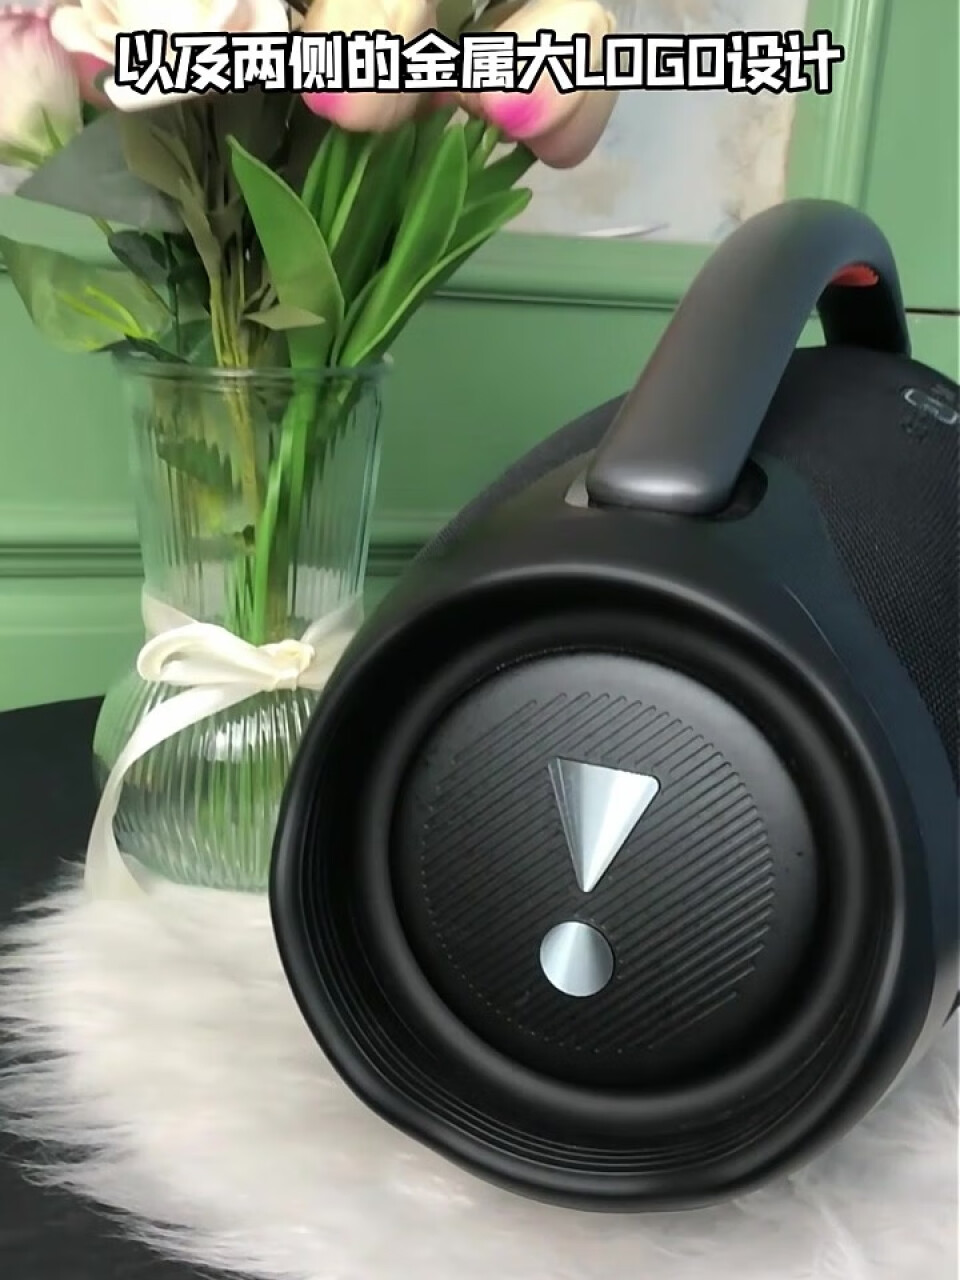 JBL BOOMBOX3 音乐战神三代3代便携式蓝牙音箱 低音炮 户外音箱 IP67防尘防水 Hifi音质 桌面音响 黑色,第4张